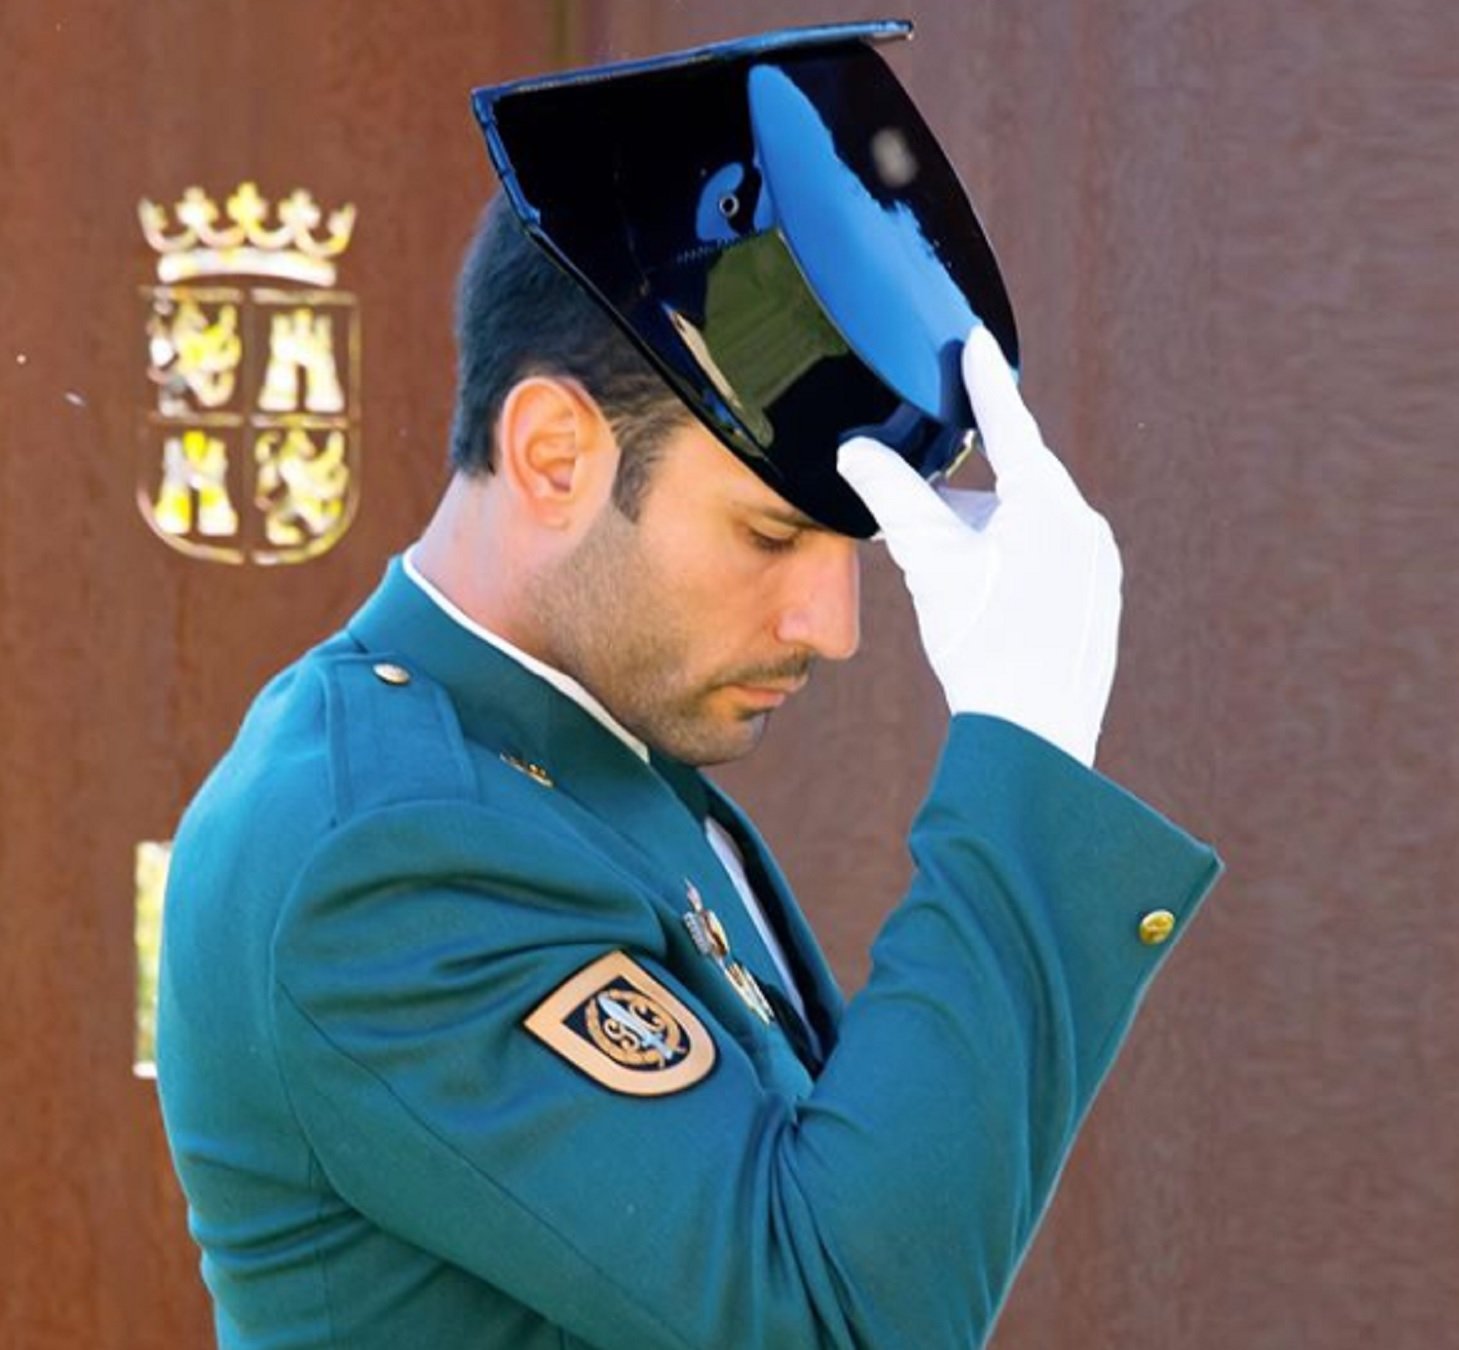 El poli més guapo d'Espanya despullat a T5: "Viva el cuerpo de la guardia civil"